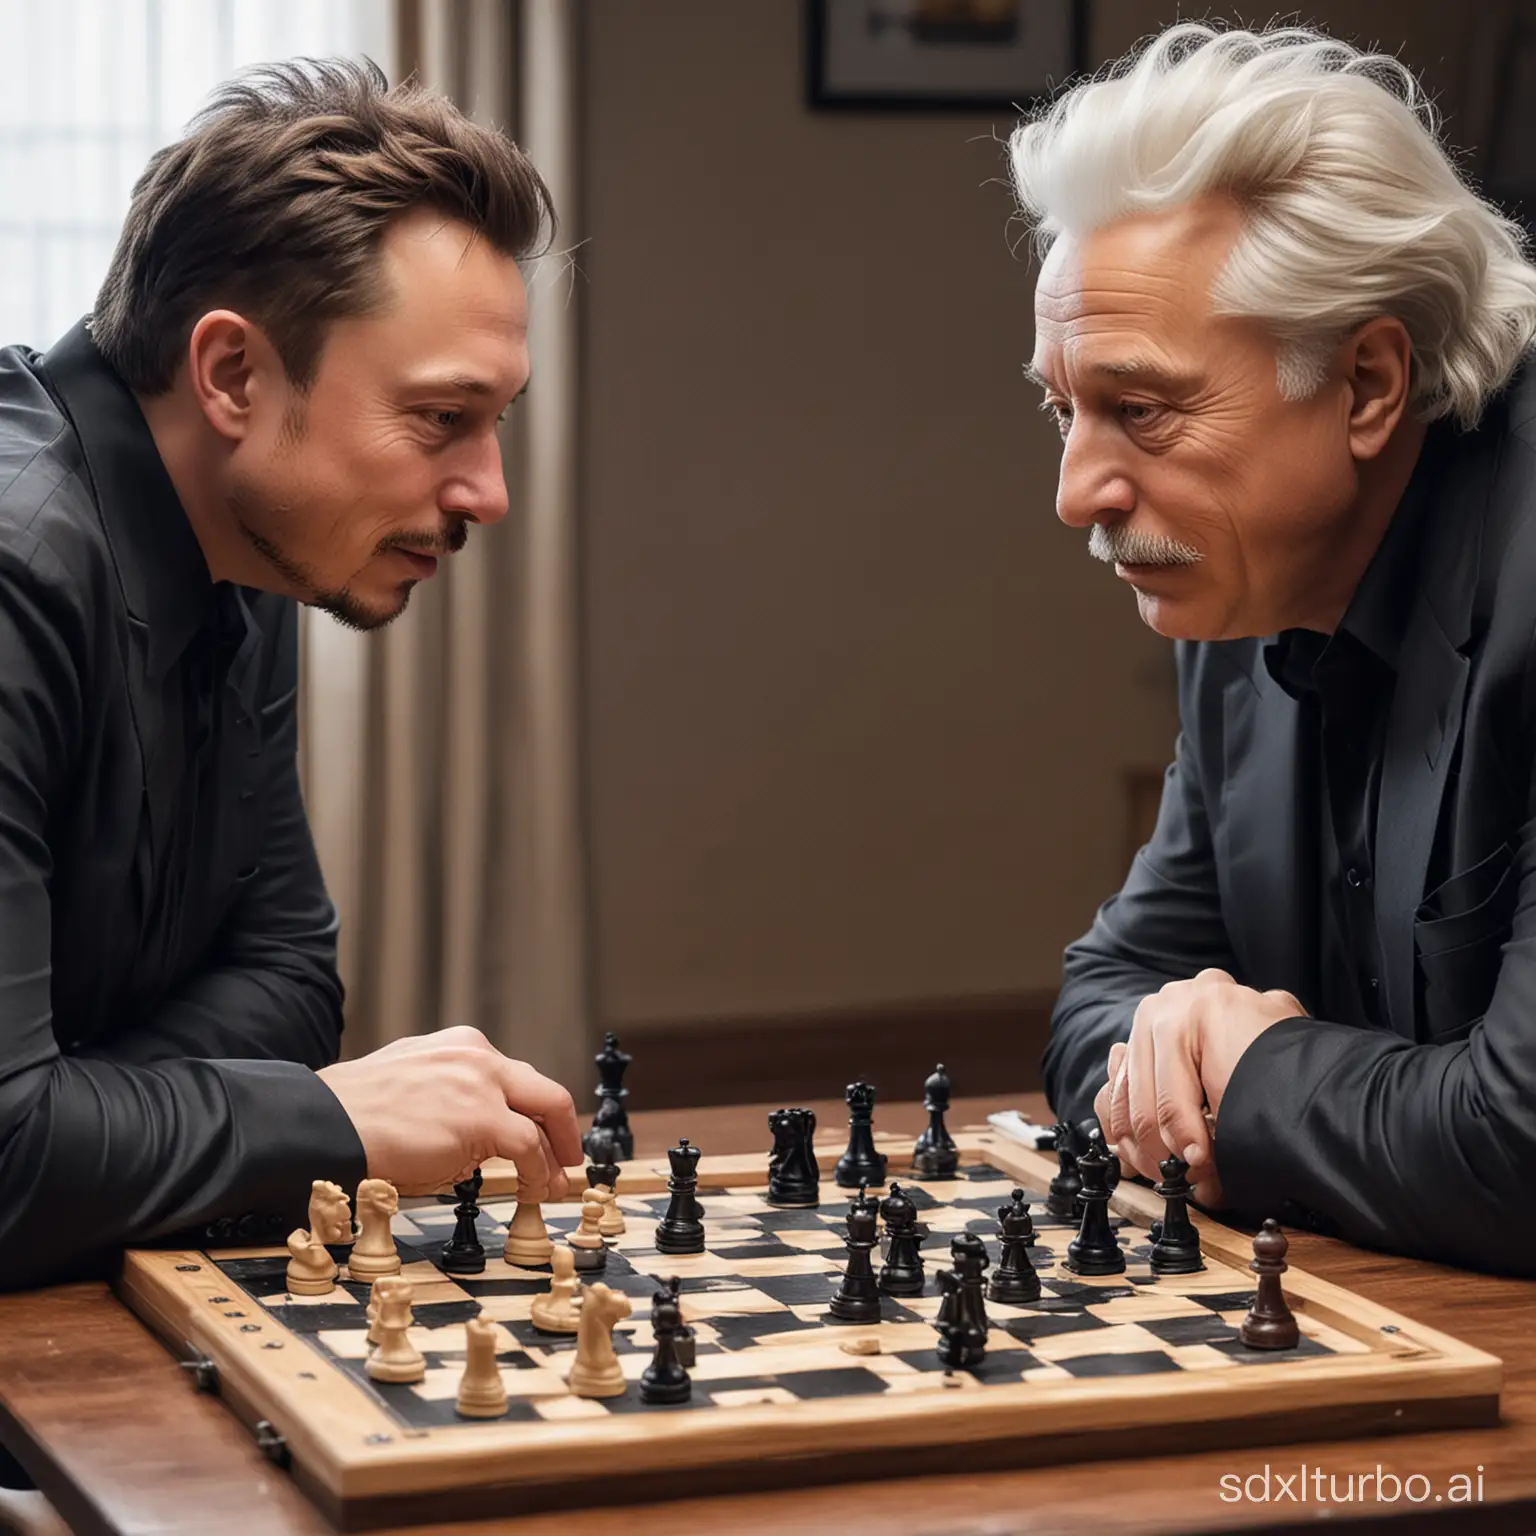 Elon-Musk-and-Albert-Einstein-Engaged-in-Strategic-Chess-Match